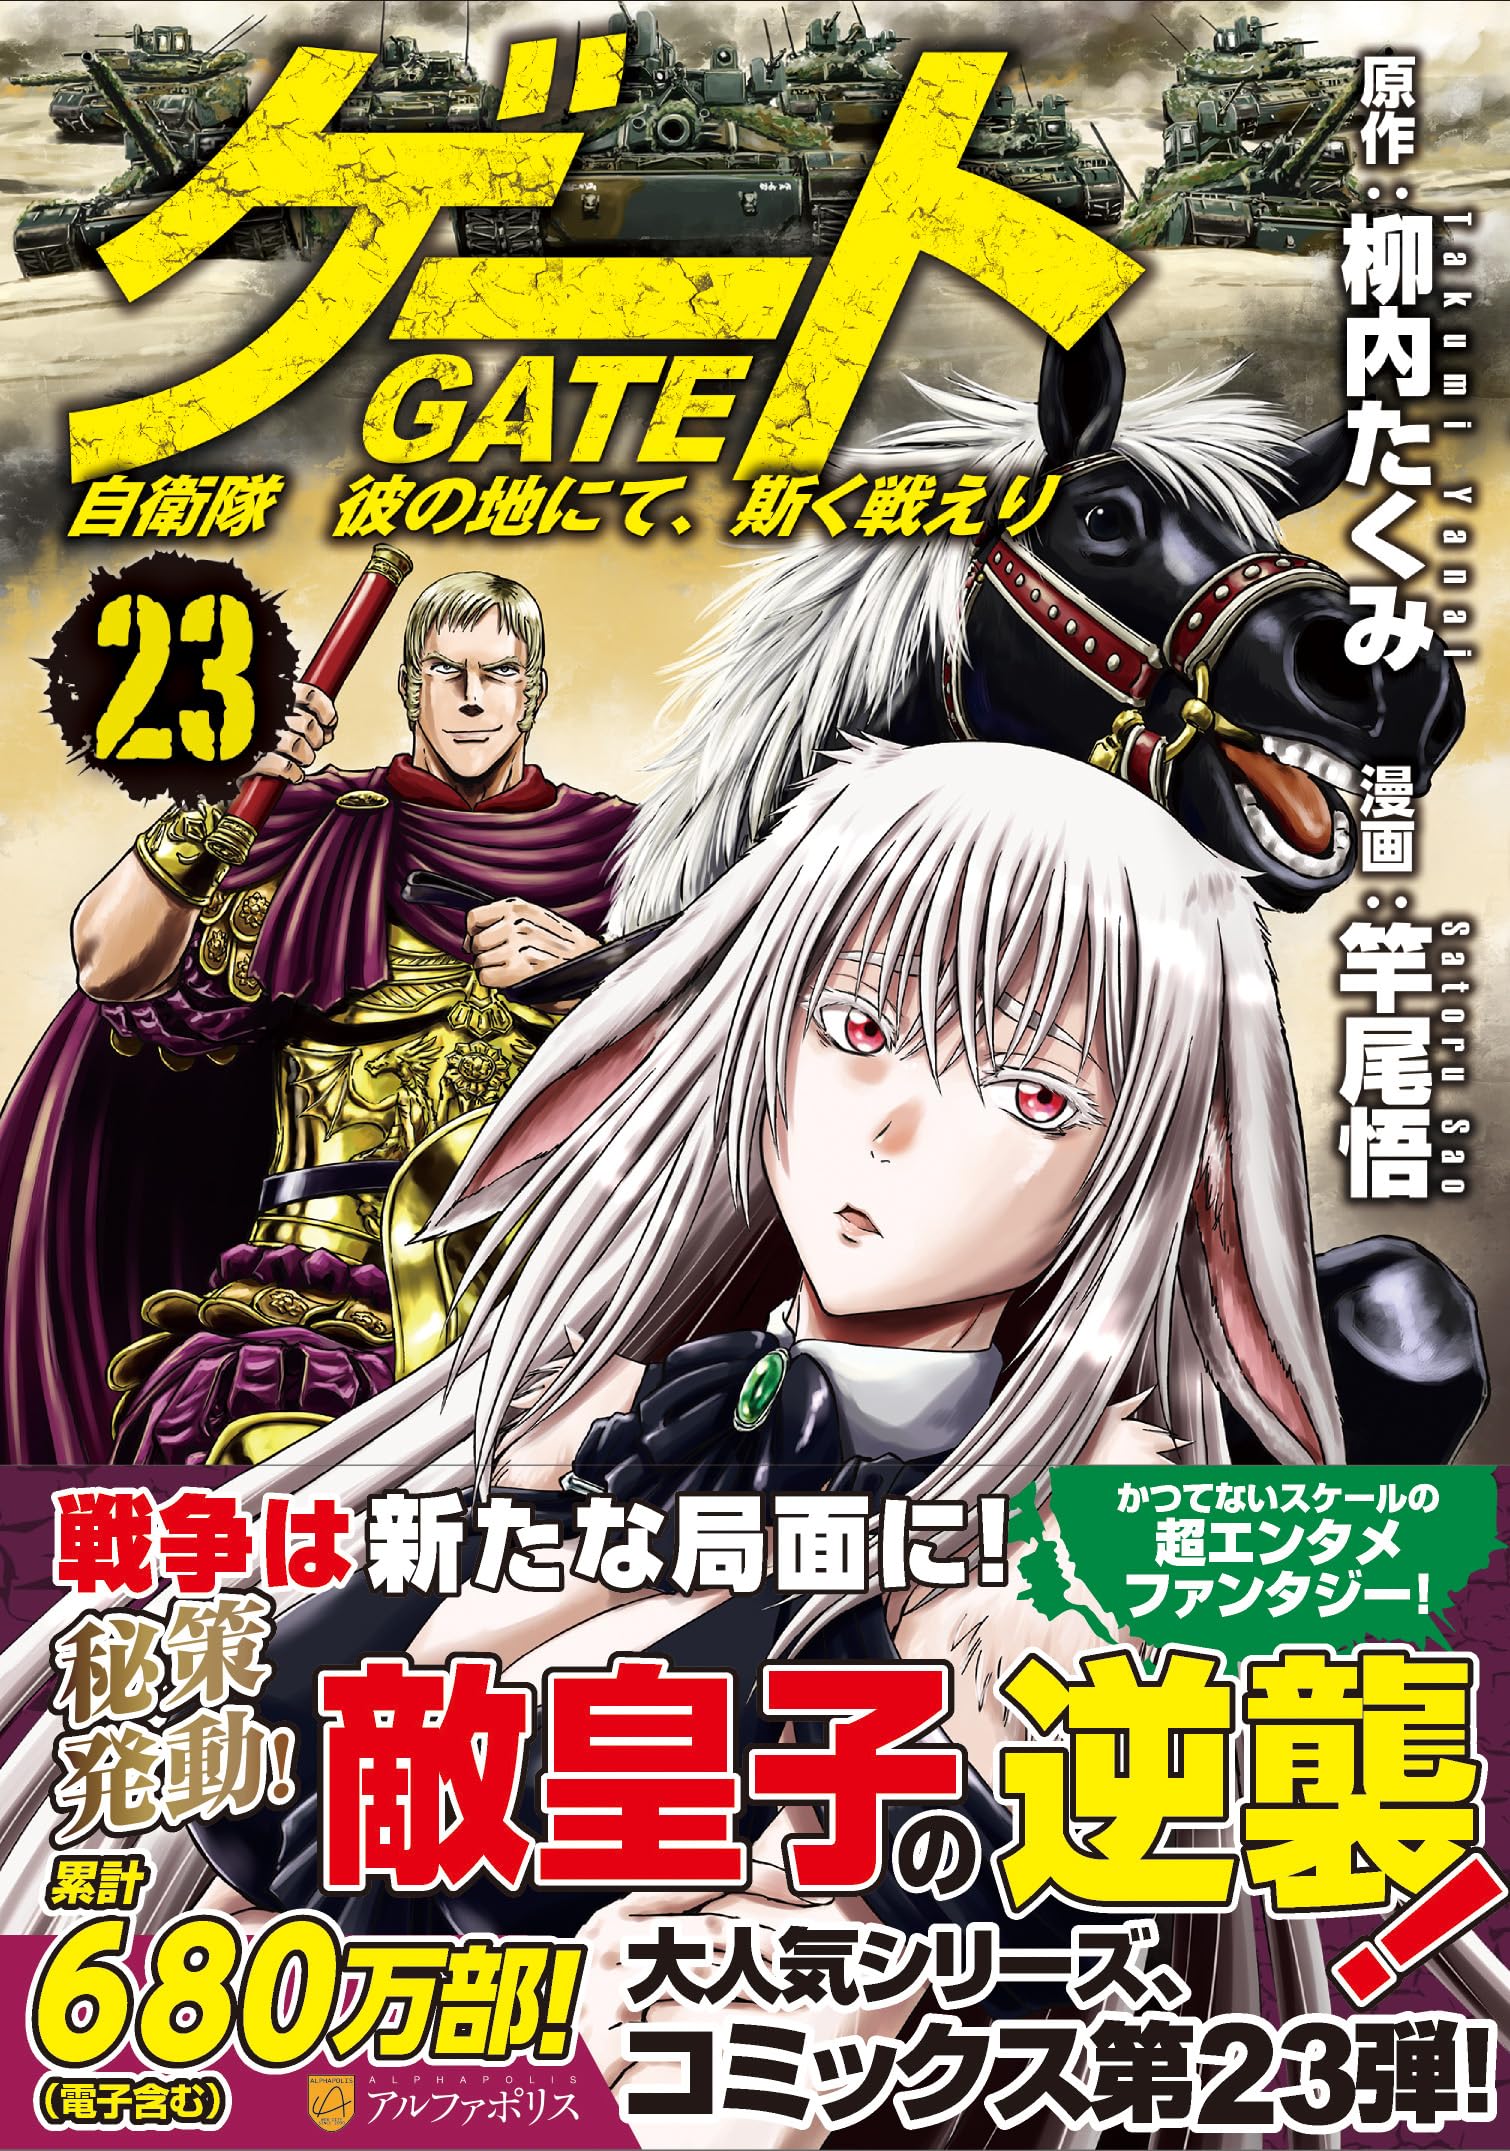 GATE：Where the JSDF Fought: GATE Jieitai Kanochinite Kaku Tatakaeri Vol.１  (GATE：Where the JSDF Fought：GATE Jieitai Kanochinite Kaku Tatakaeri Book 1)